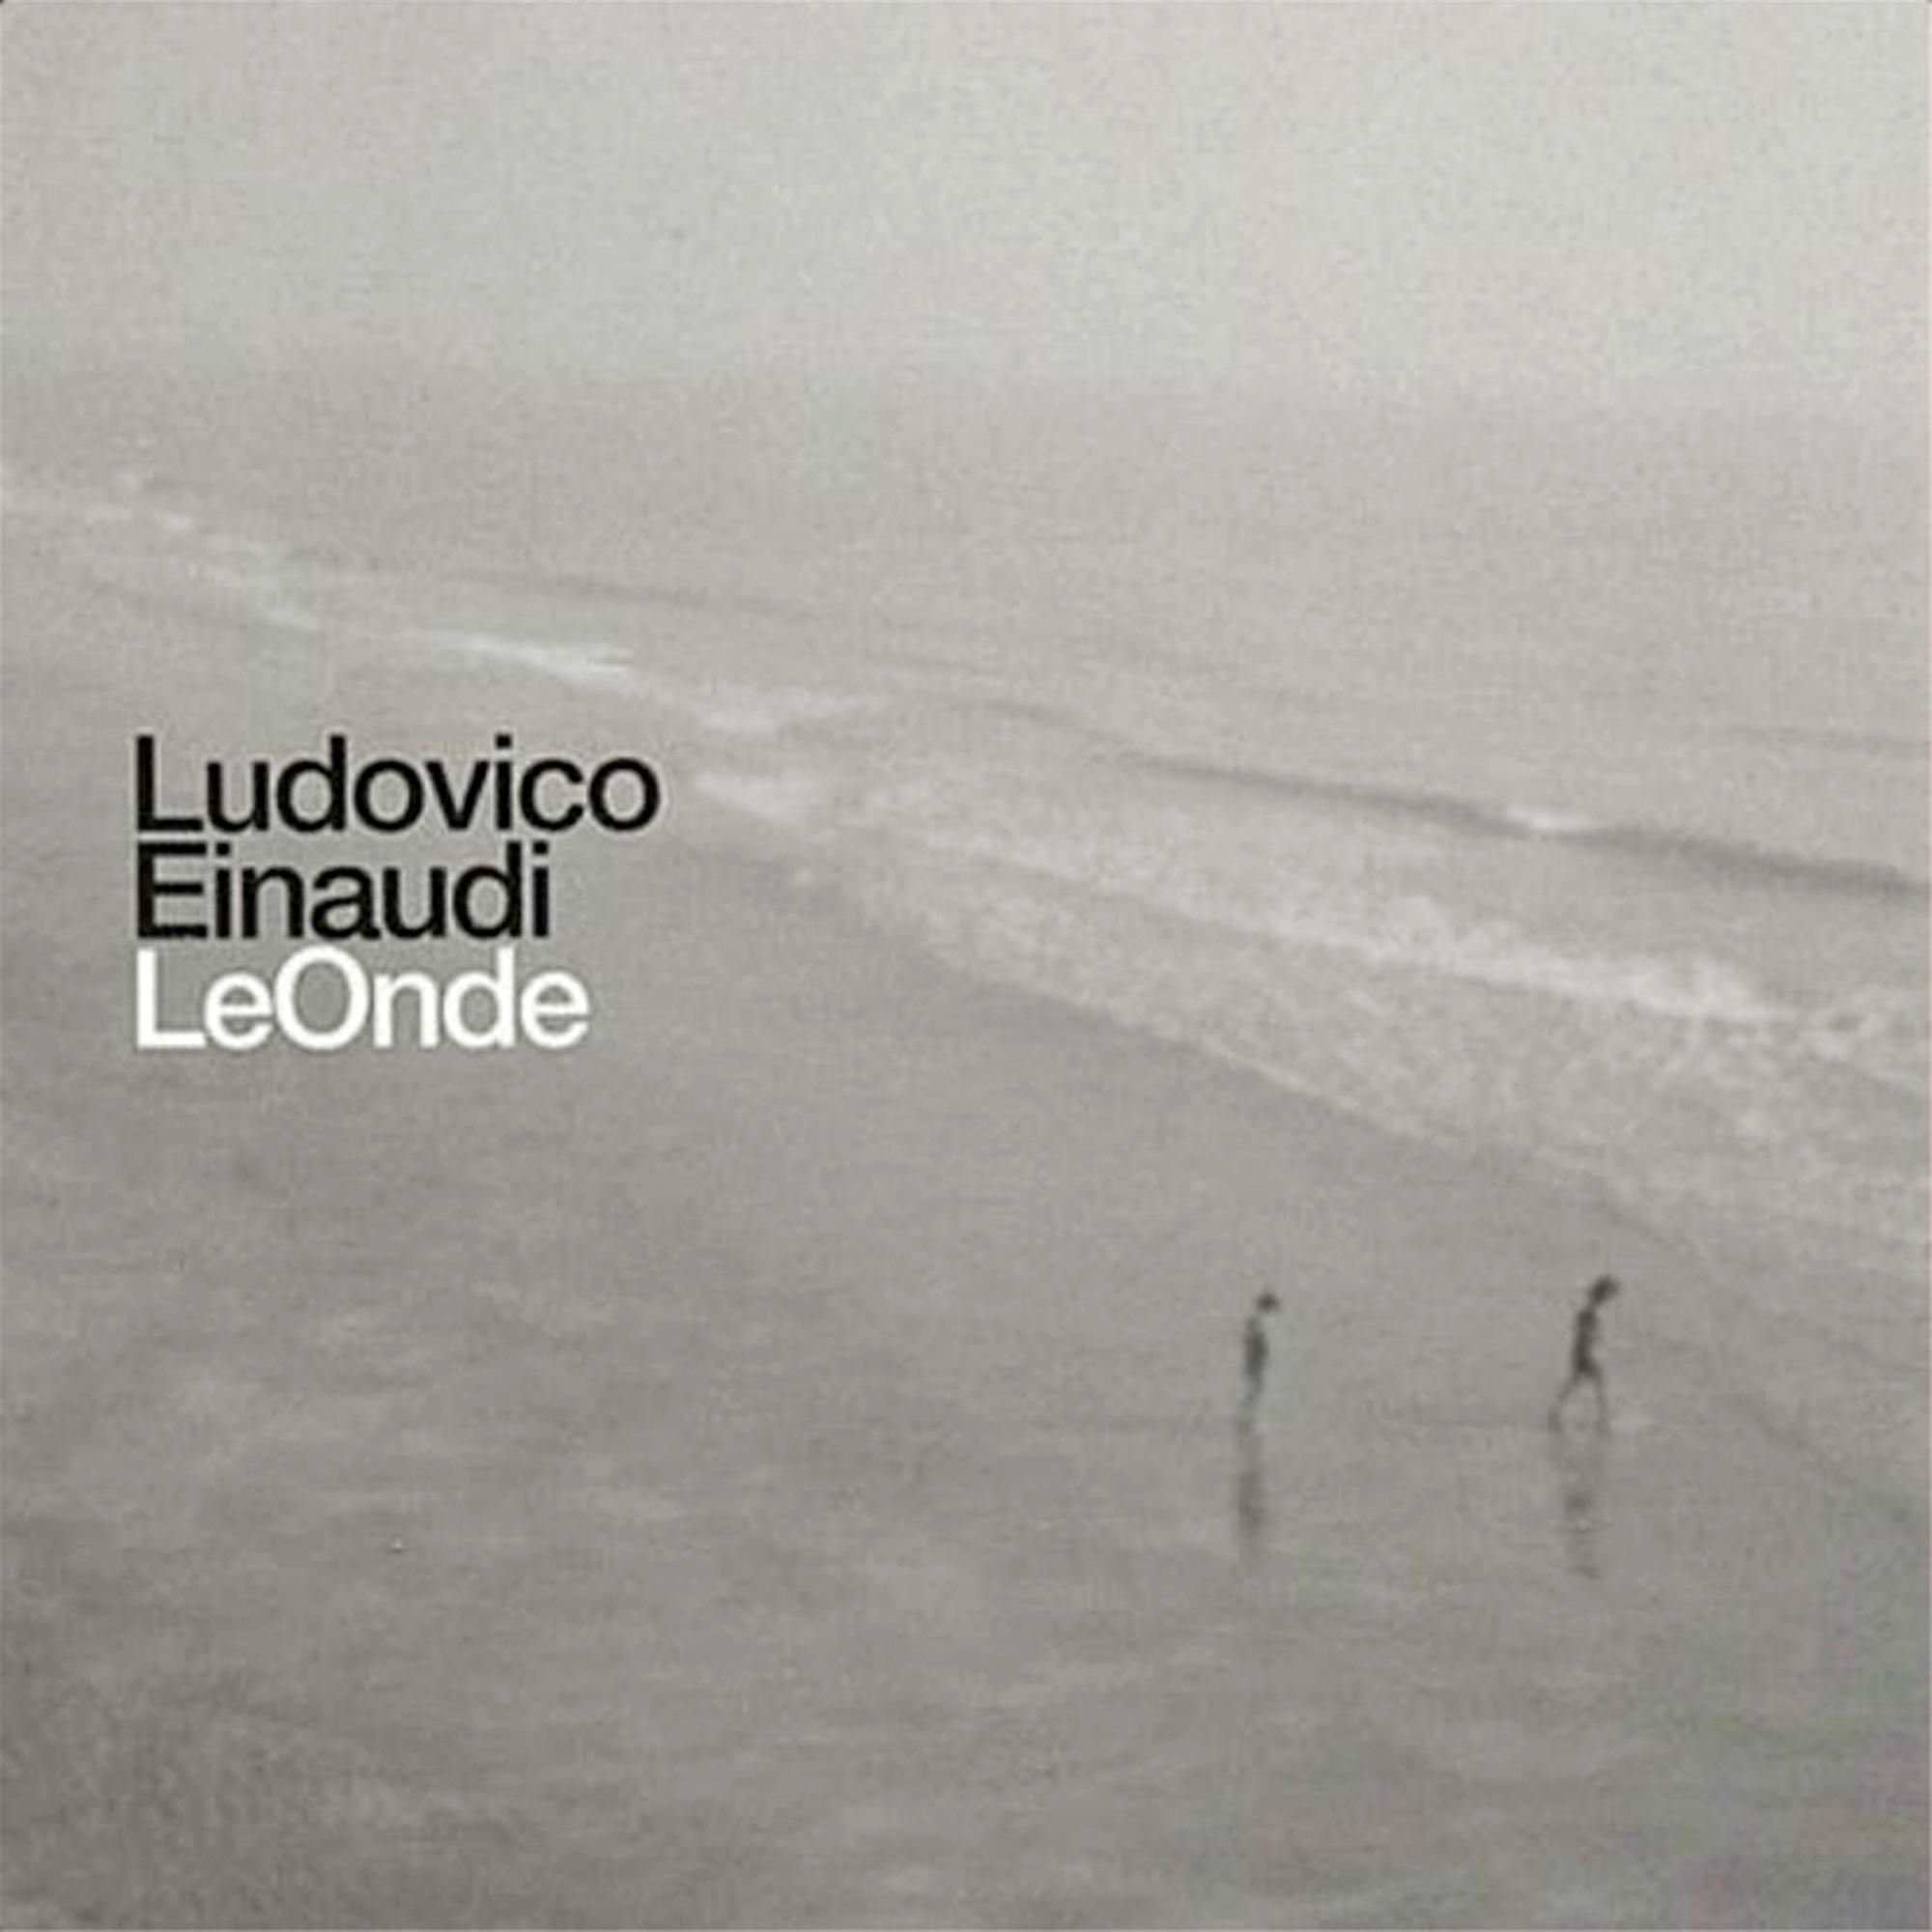 Onde Ludovico Le - - Einaudi (Vinyl)